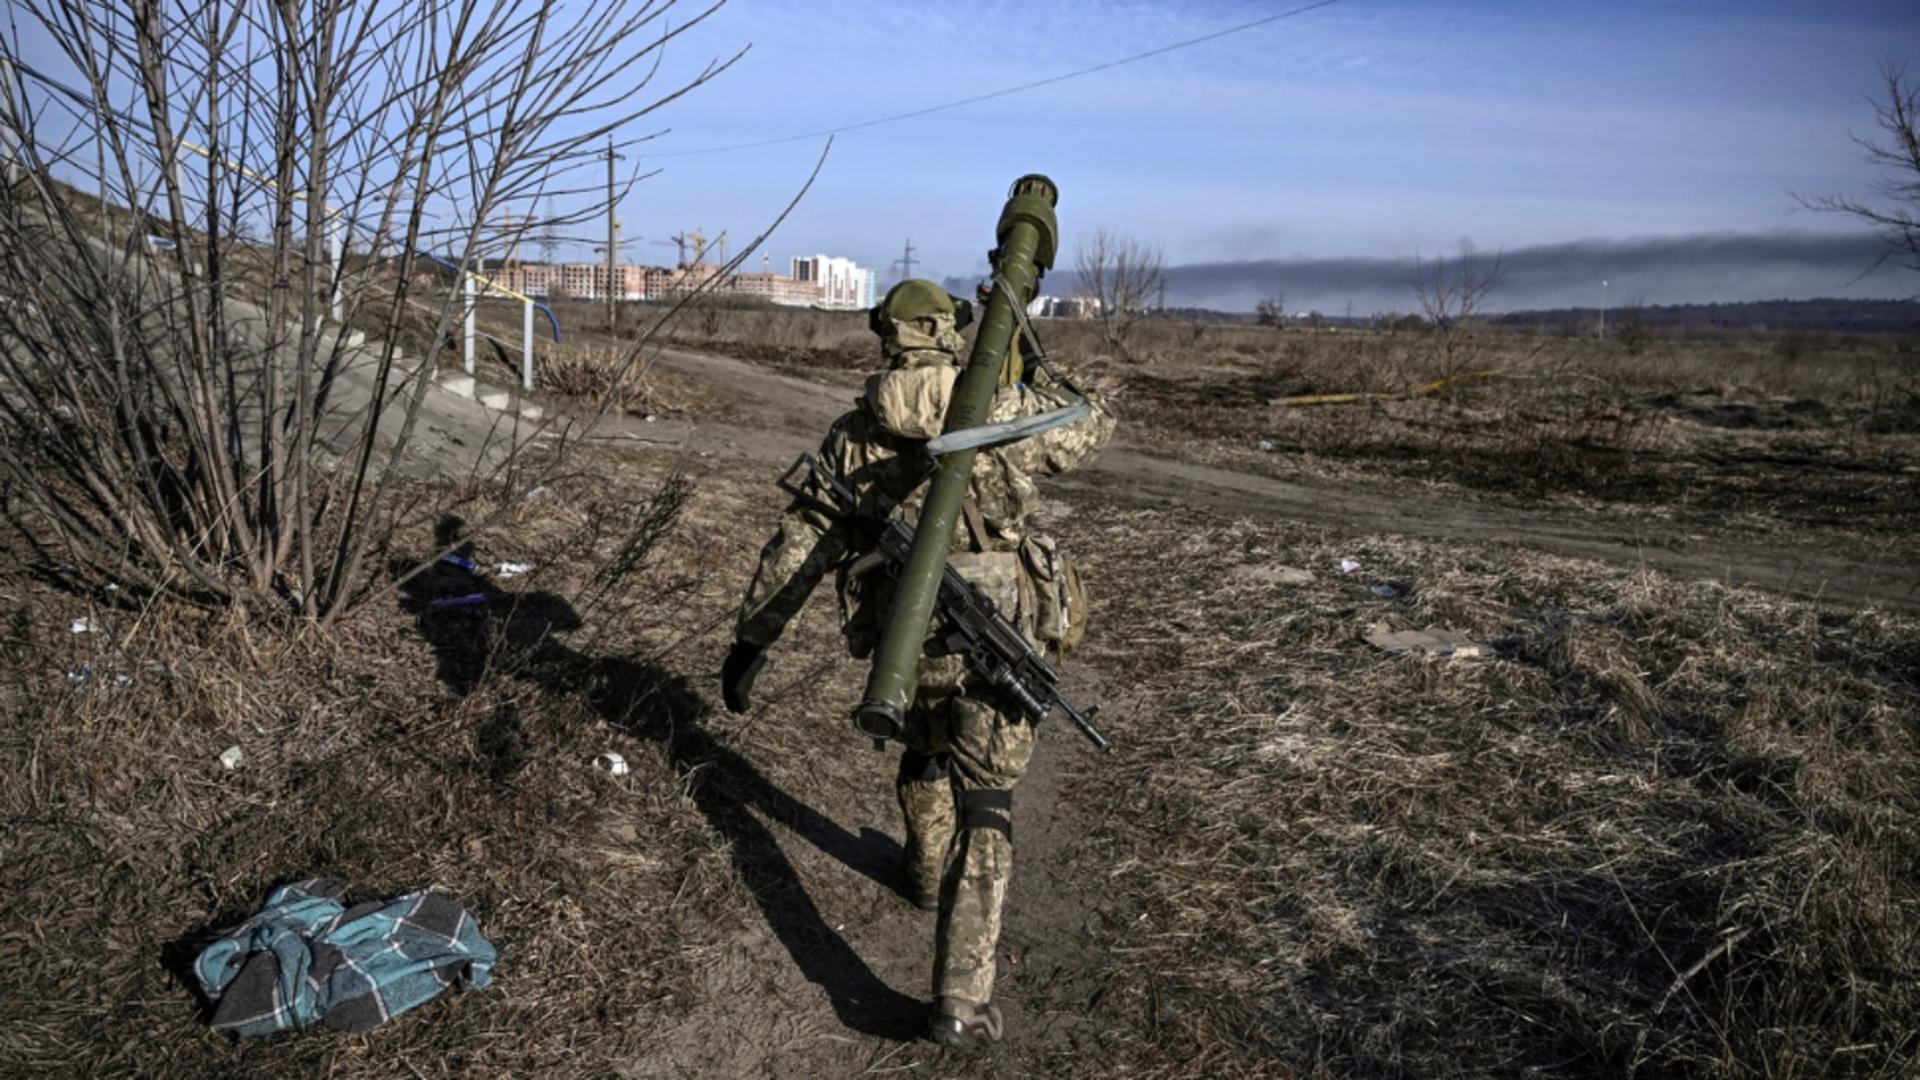 Război Ucraina, ziua 49. Ofensiva rusă se concentrează în Donbas / Foto: Profi Media